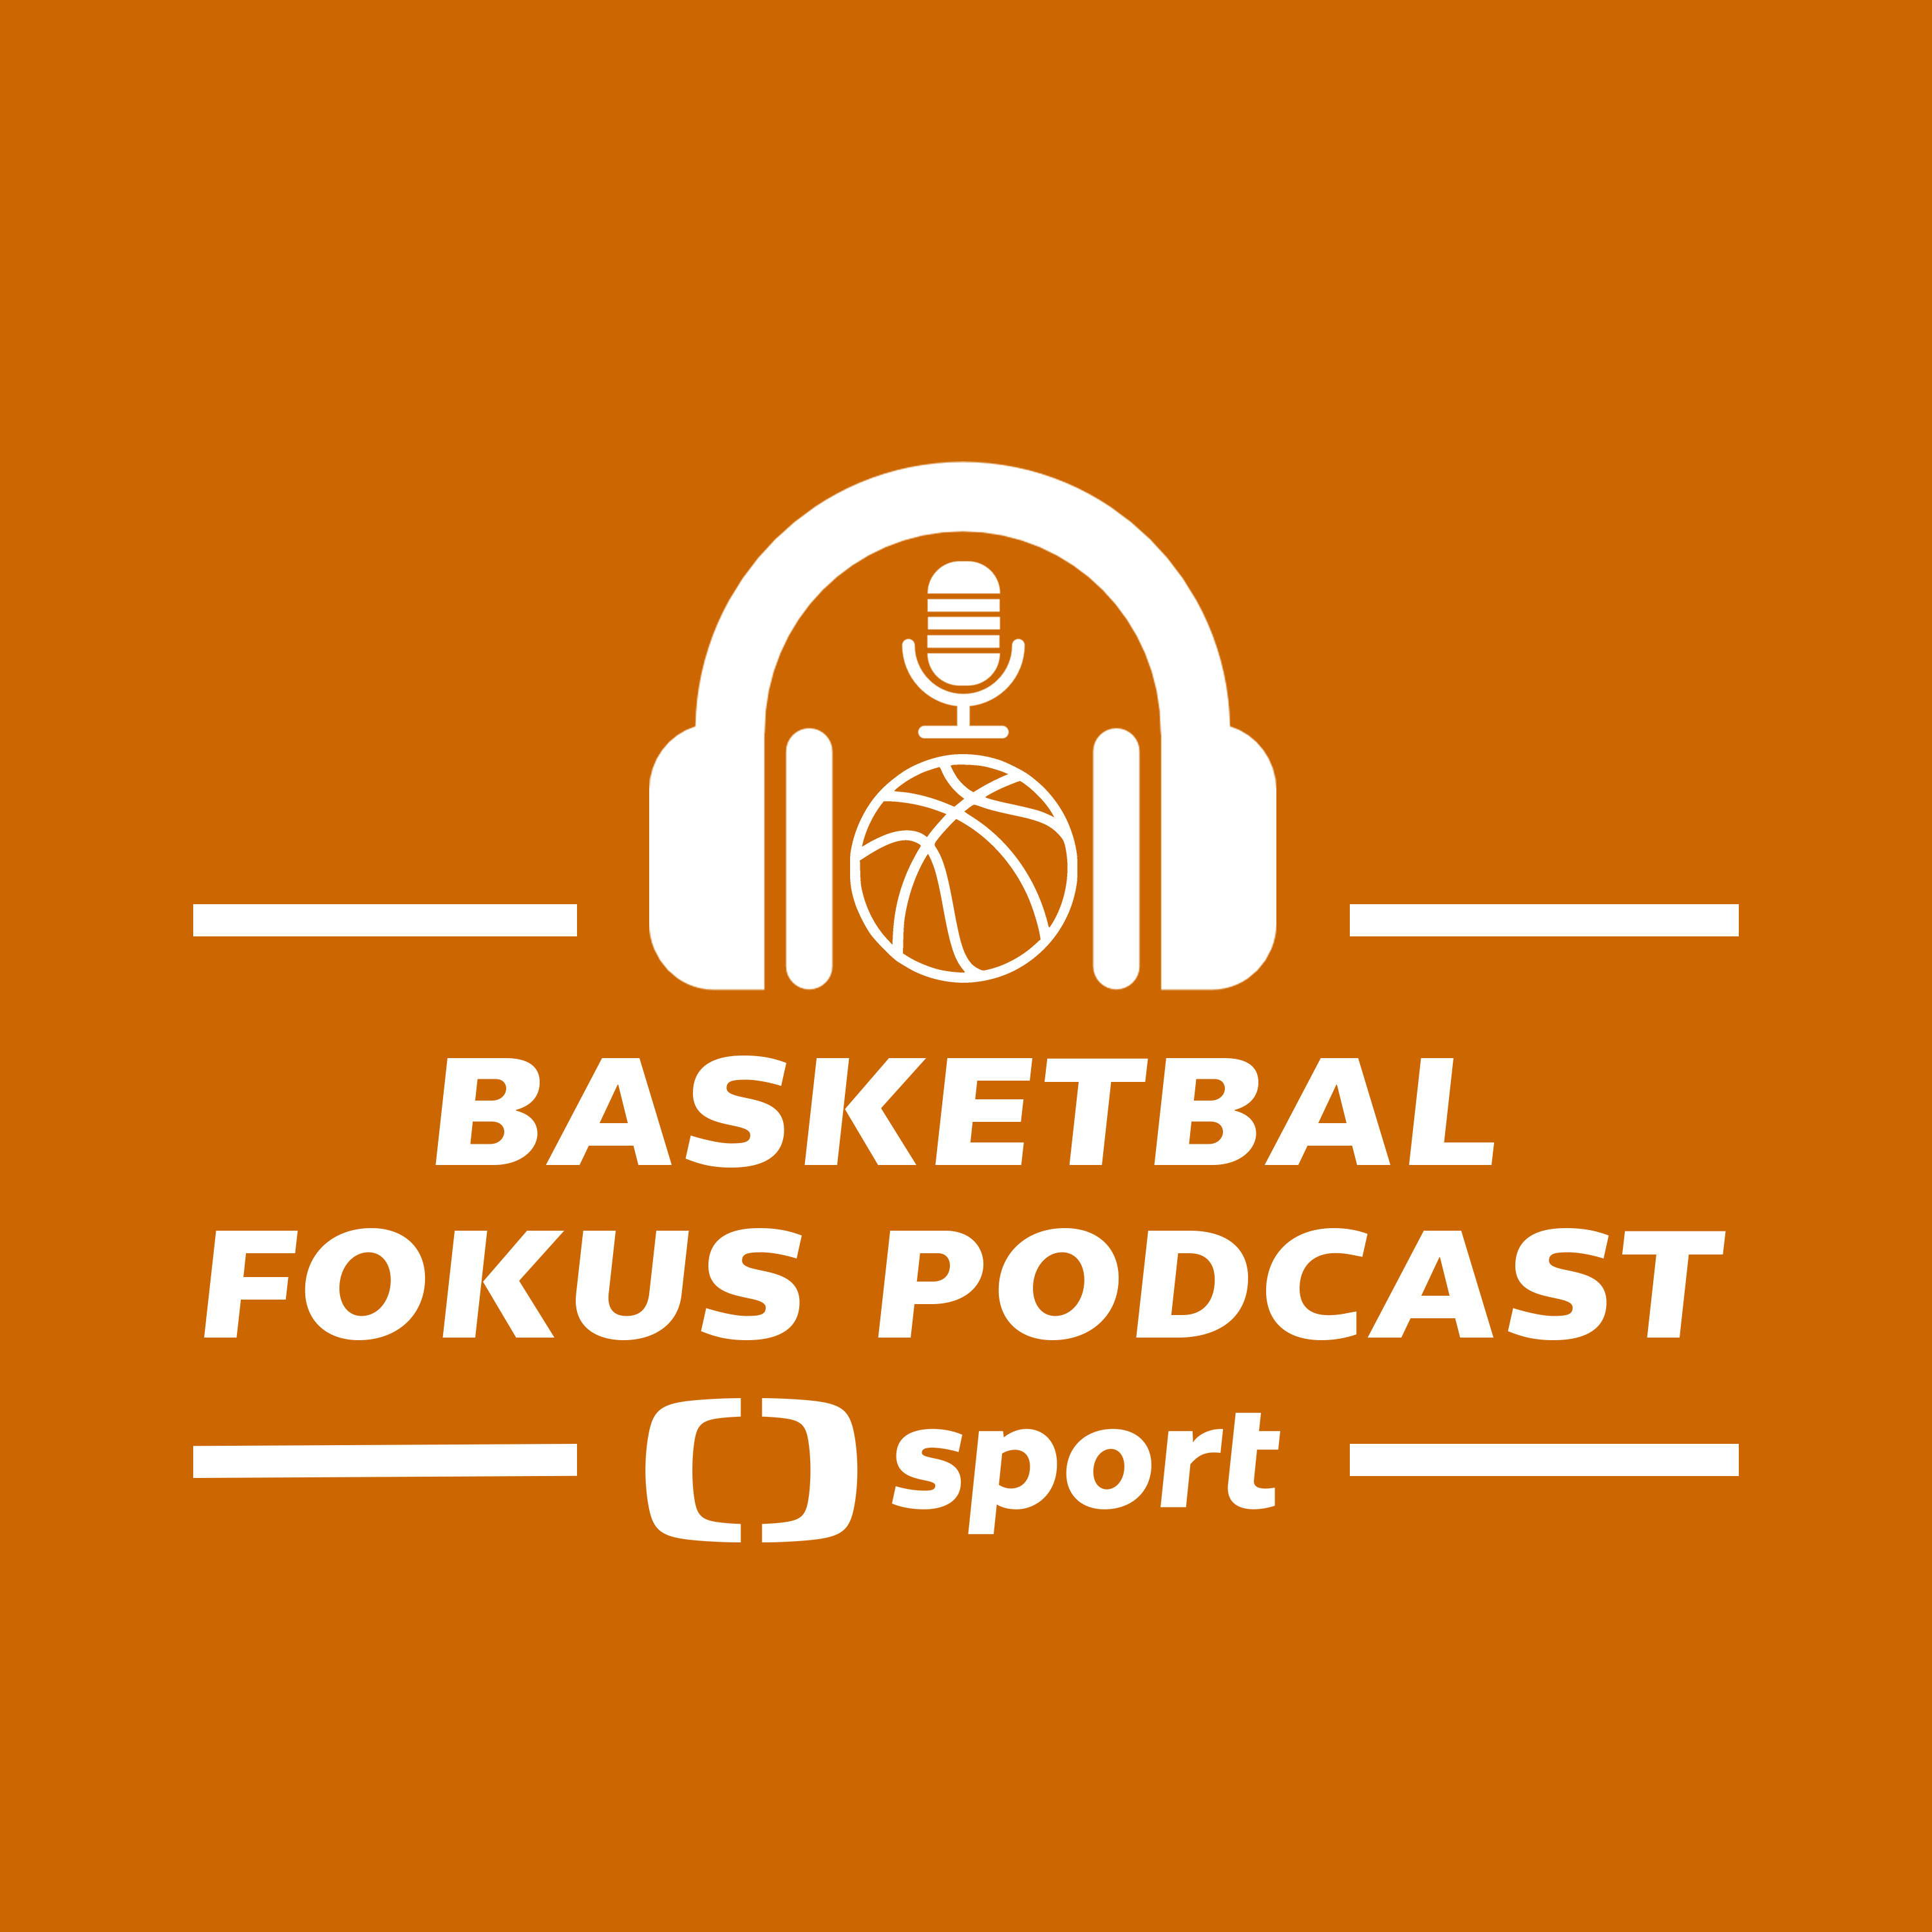 Basketbal fokus podcast: Postup na MS se nekoná, co čeká českou reprezentaci dál?